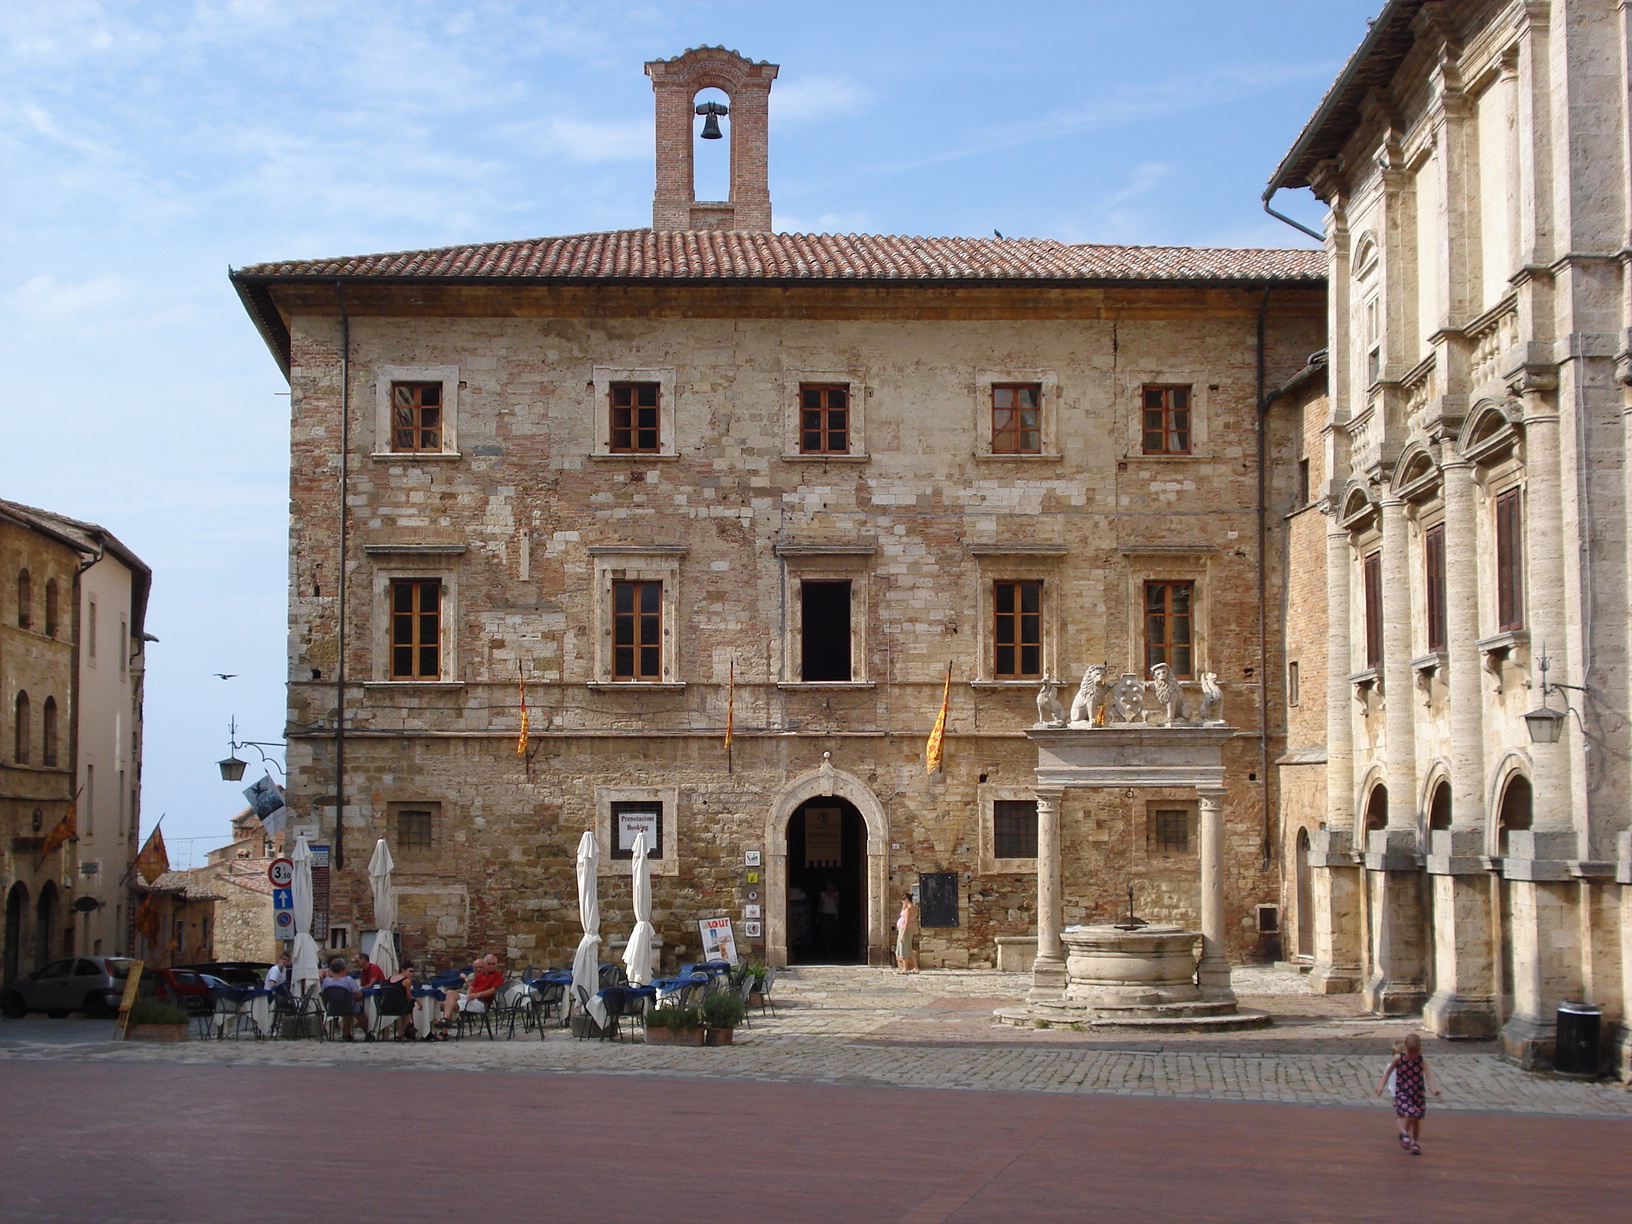 Palazzo del Capitano in Montepulciano